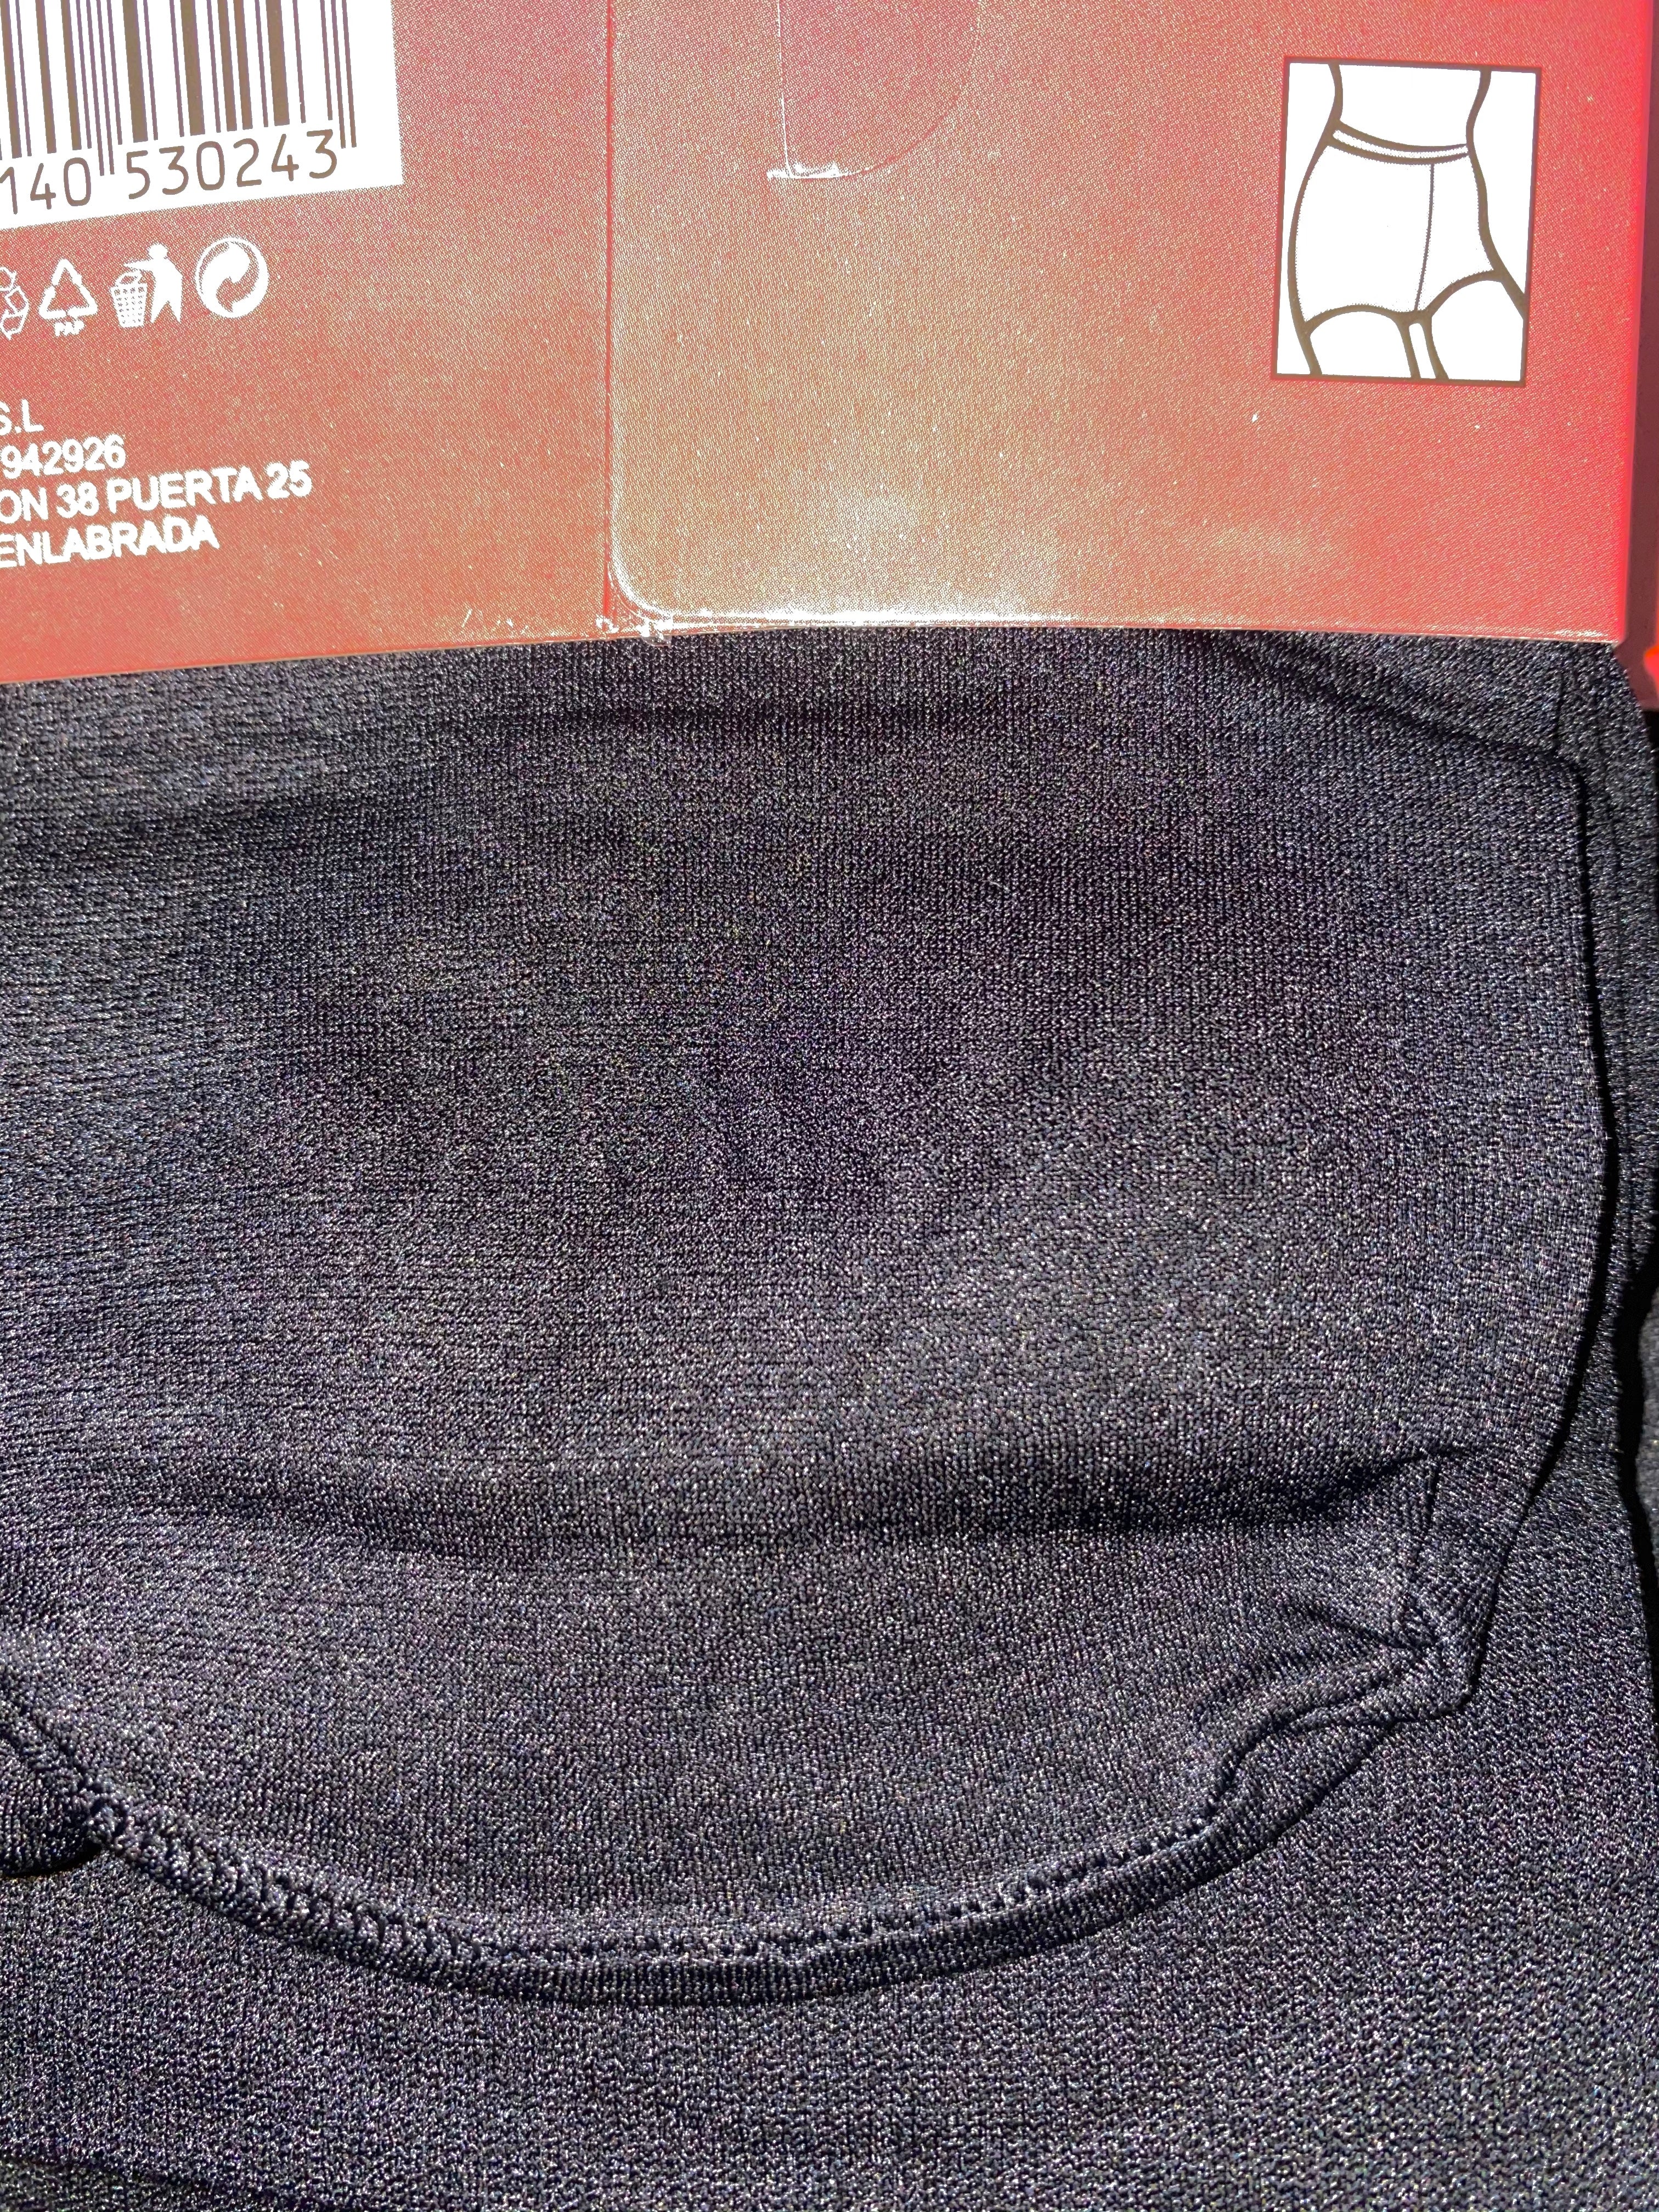 Collants noir opaque 180 deniers (x12)